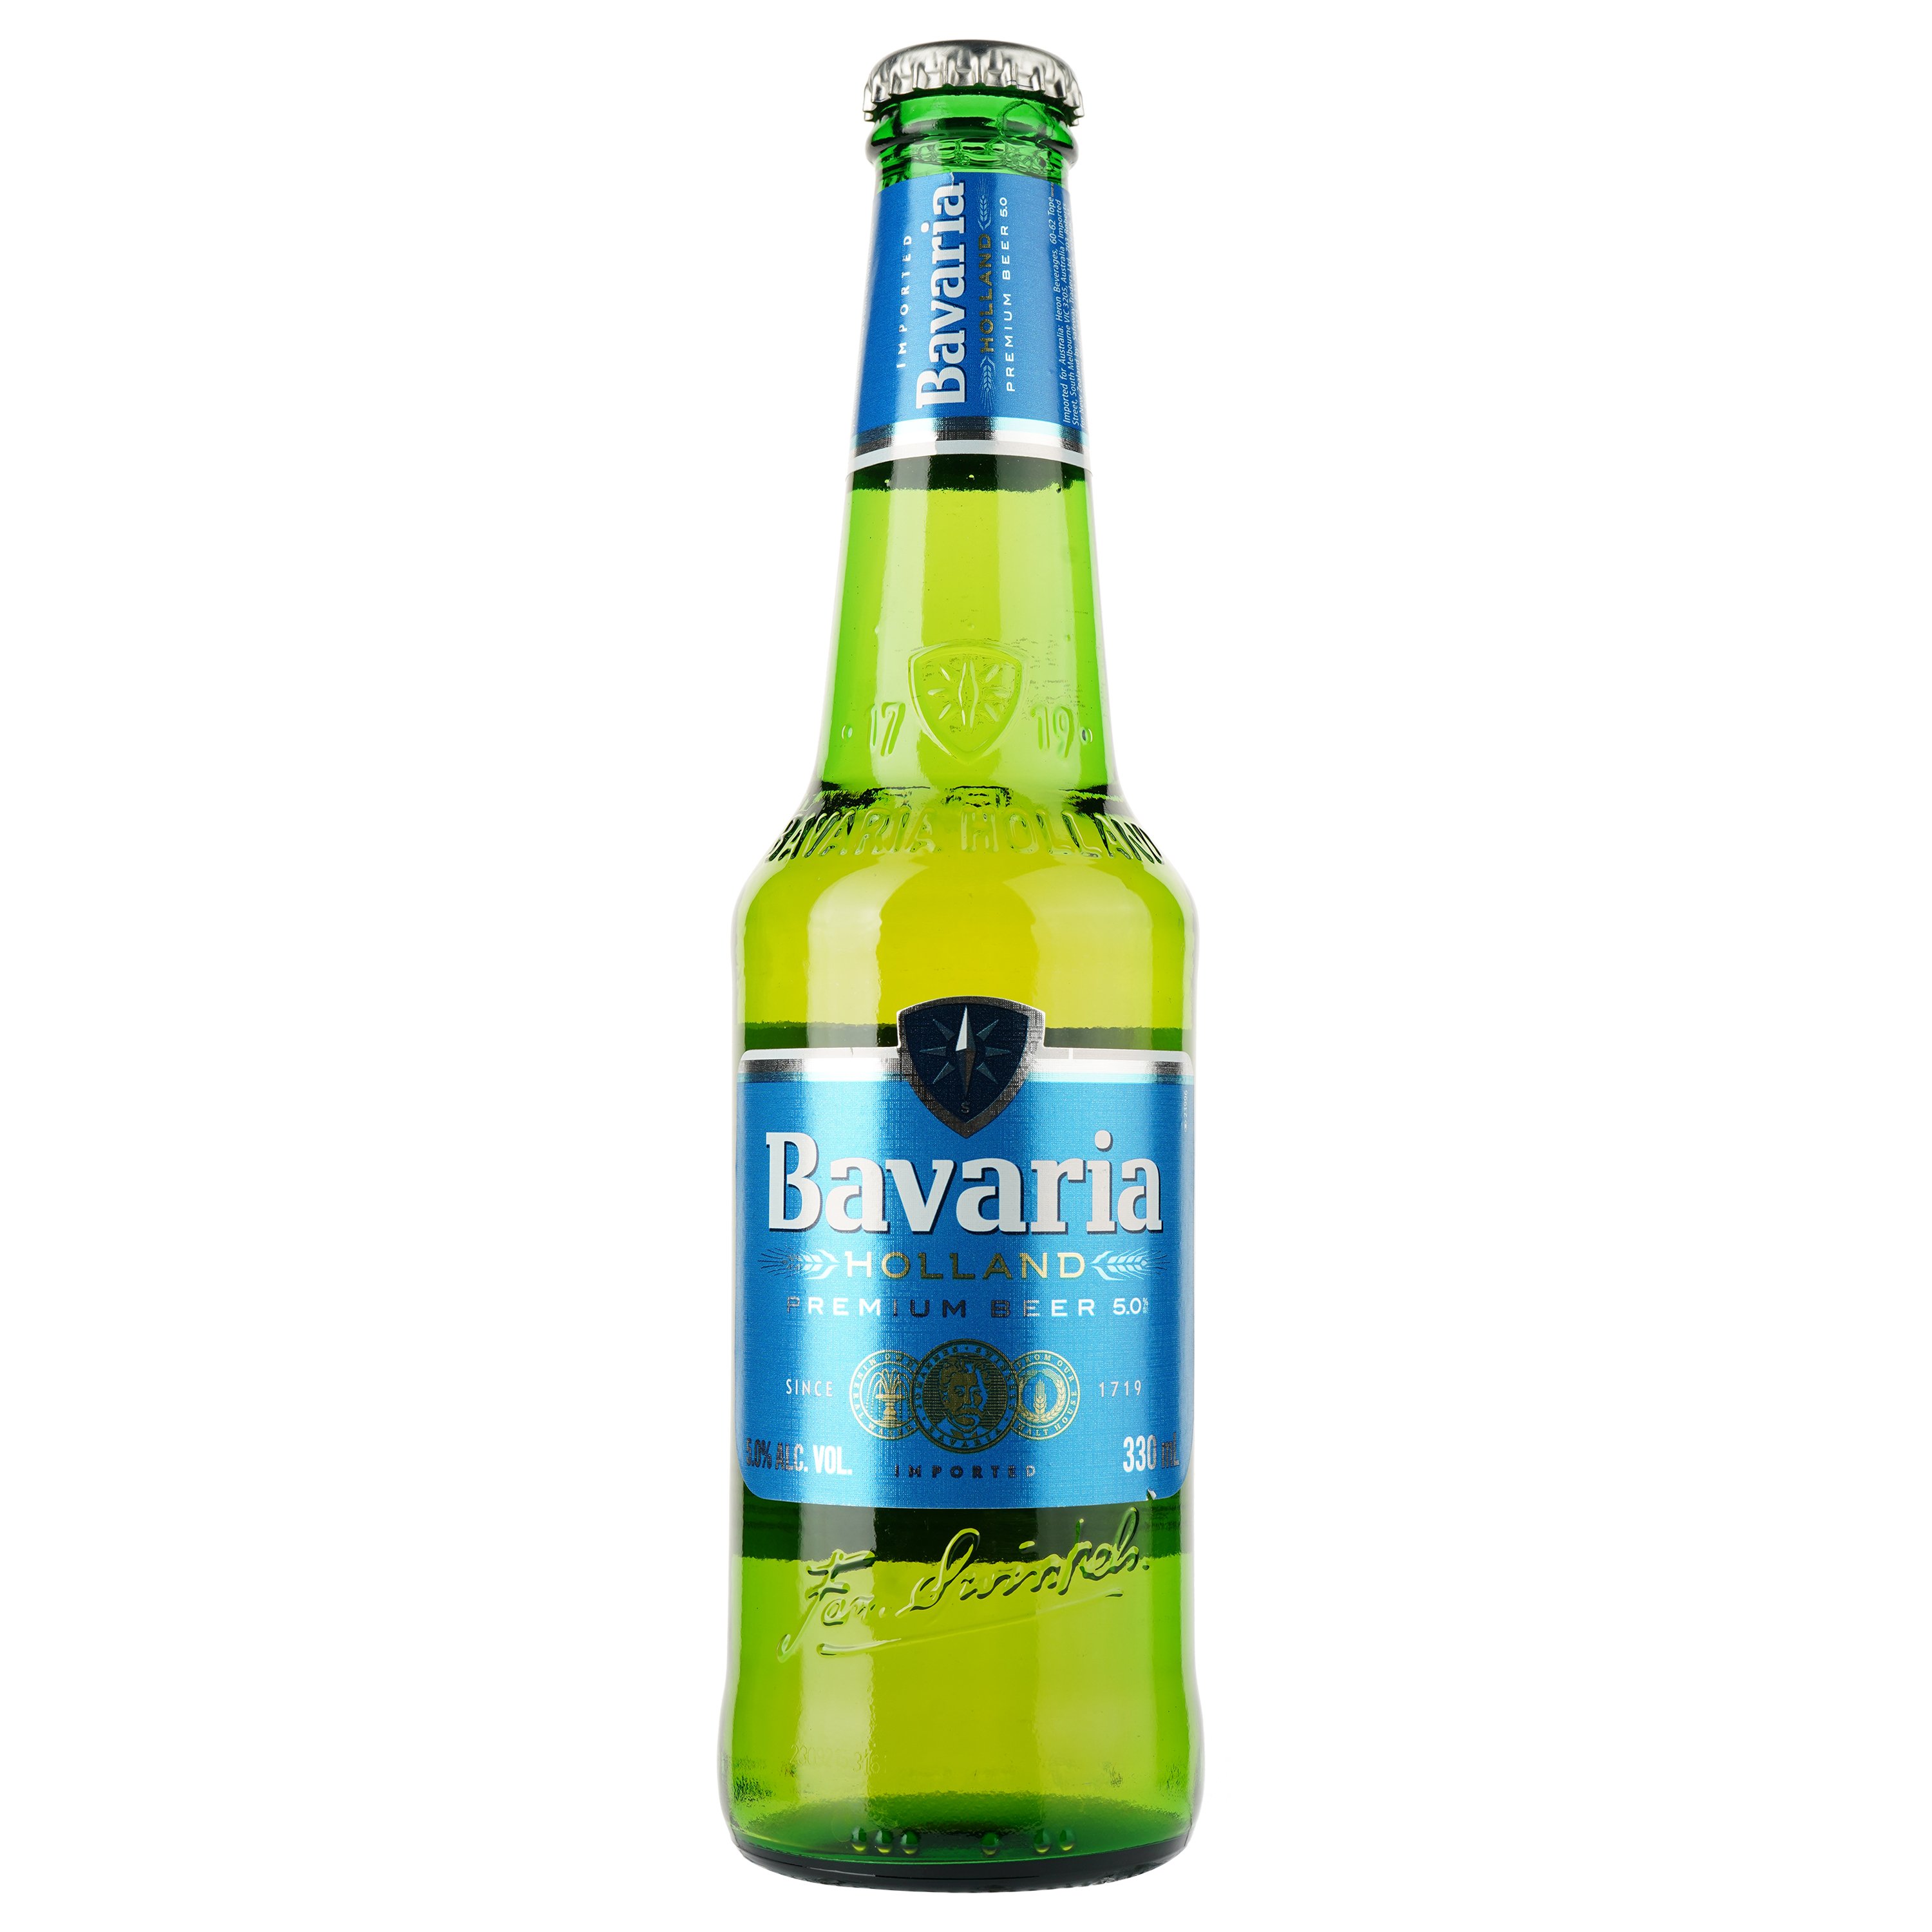 Пиво Bavaria, светлое, фильтрованное, 5%, 0,33 л - фото 1